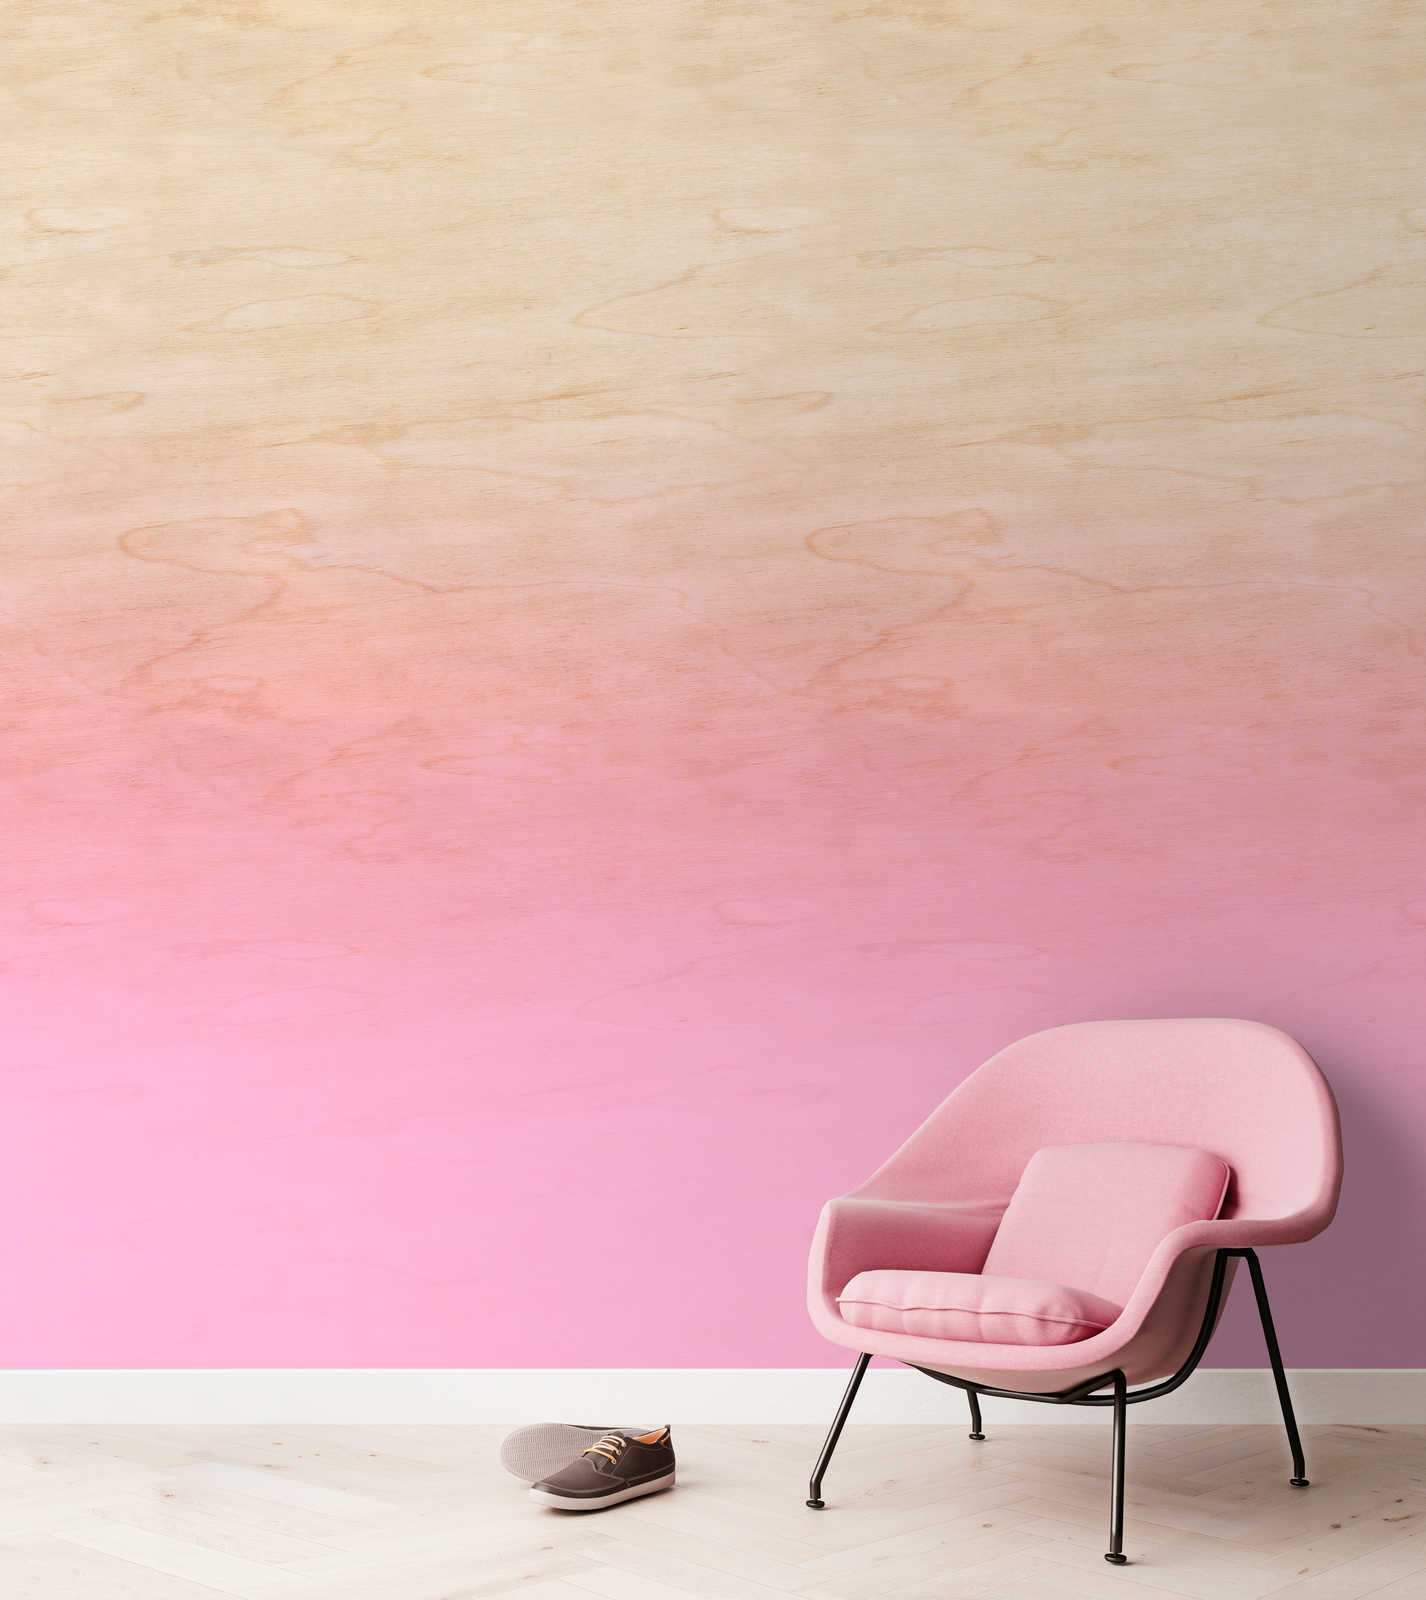             Workshop 1 - Pink Ombre Effect & Wood Grain Wallpaper
        